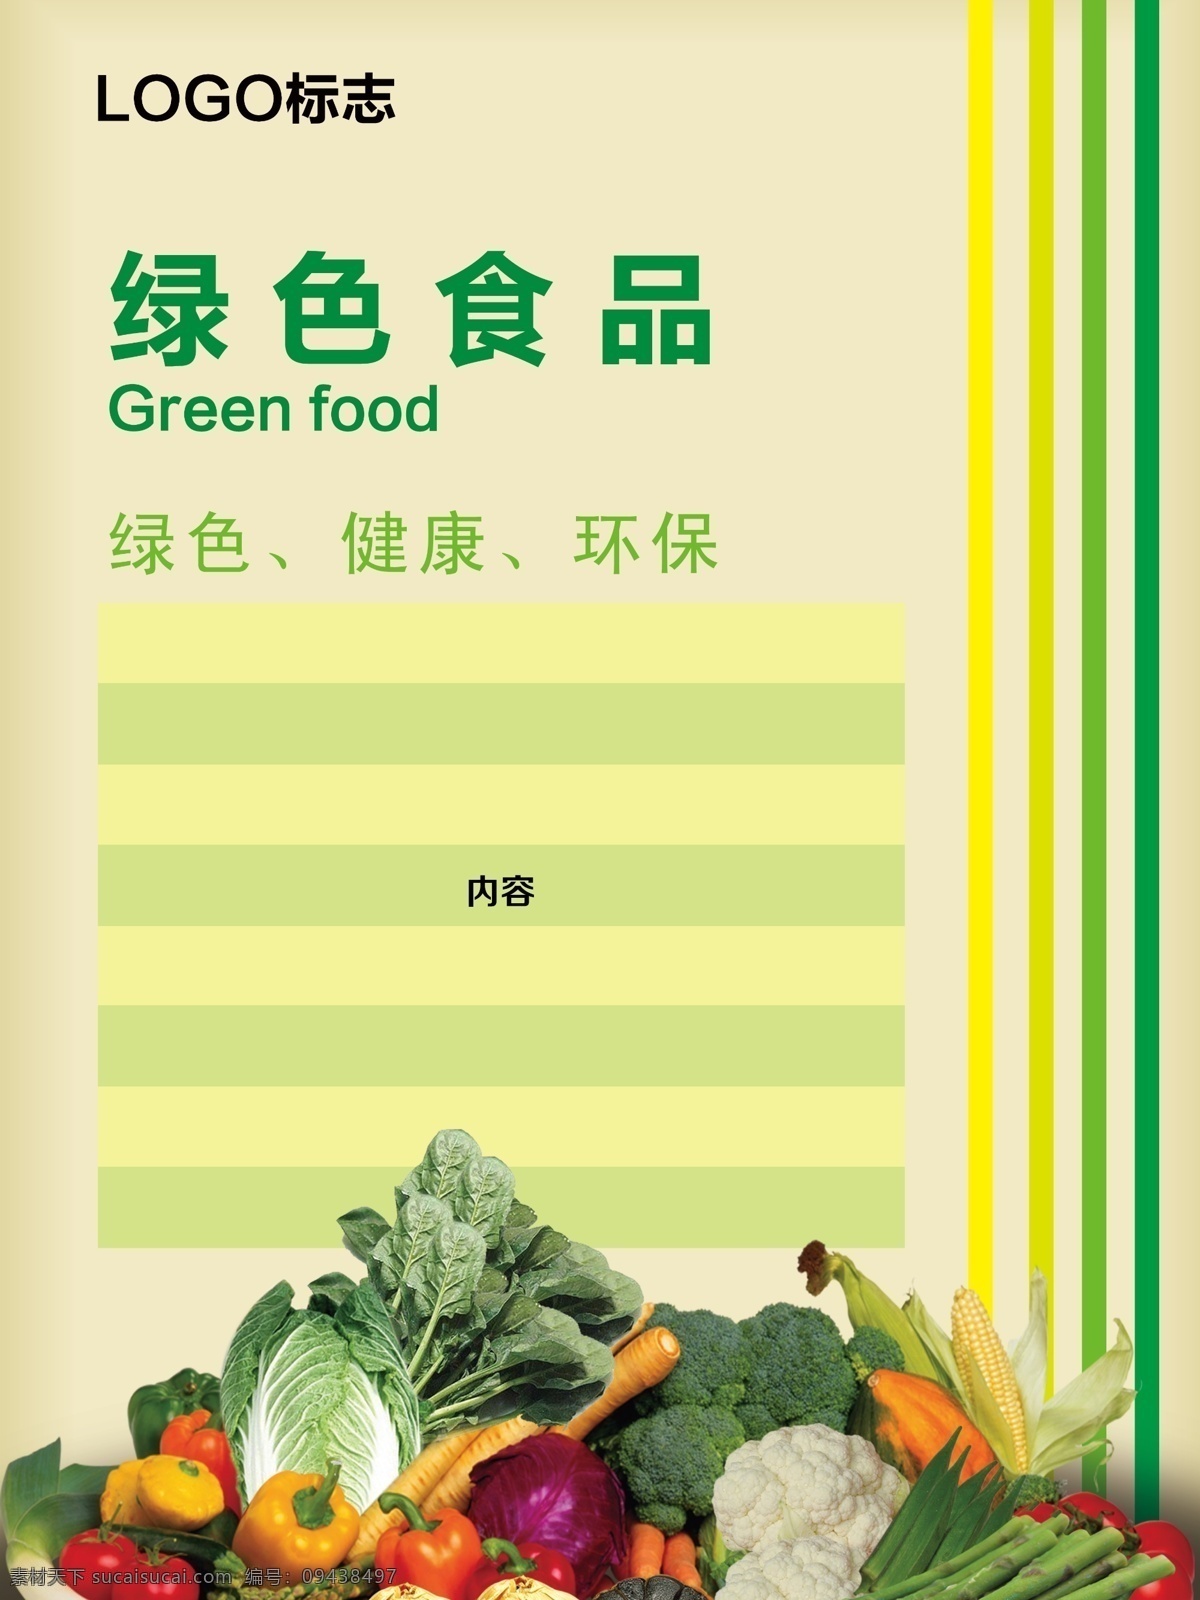 绿色食品海报 食品 蔬菜 水果 绿色 psd分层图 绿色食品 广告设计模板 食品宣传单 黄色